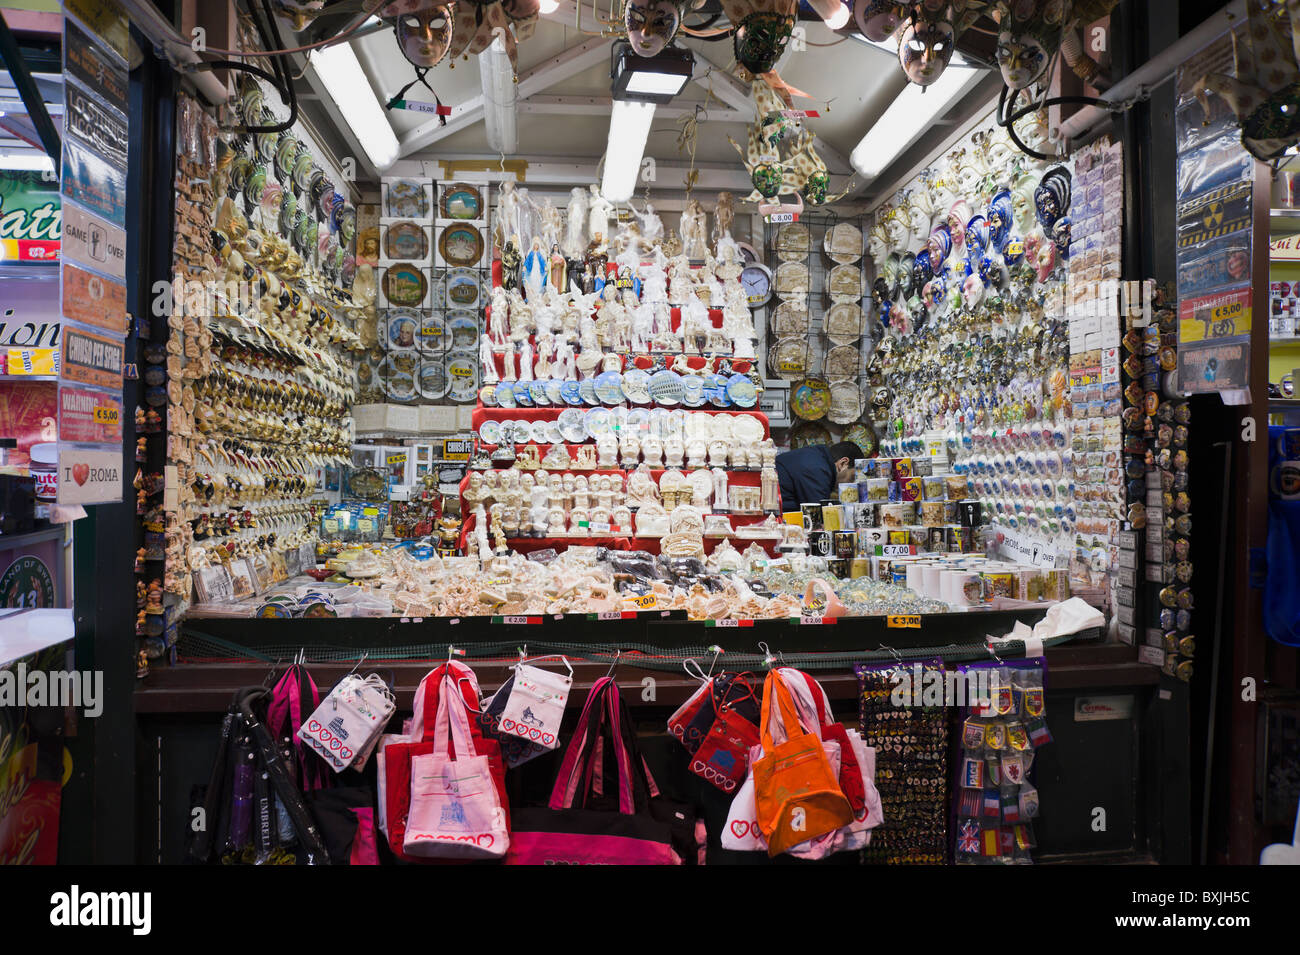 Nacht Foto von Piazza Navona Weihnachten Straße Marktstand, Verkauf von Souvenirs, Masken, Taschen, Schirme, Etc, Etc, in Rom. Stockfoto